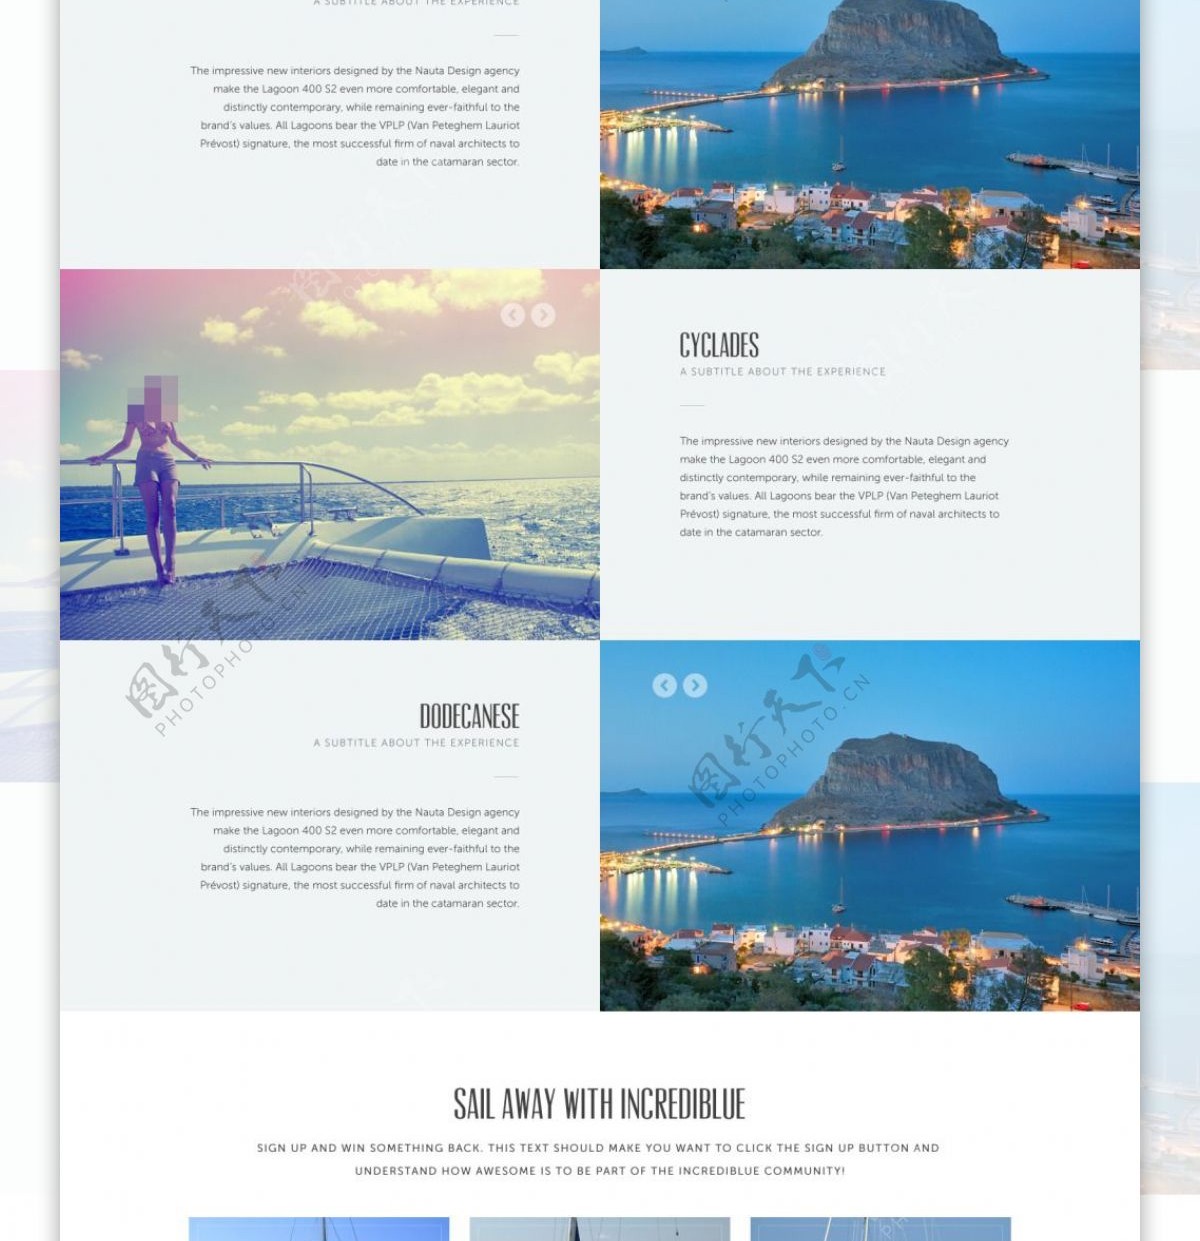 风景旅游h5网站模板设计